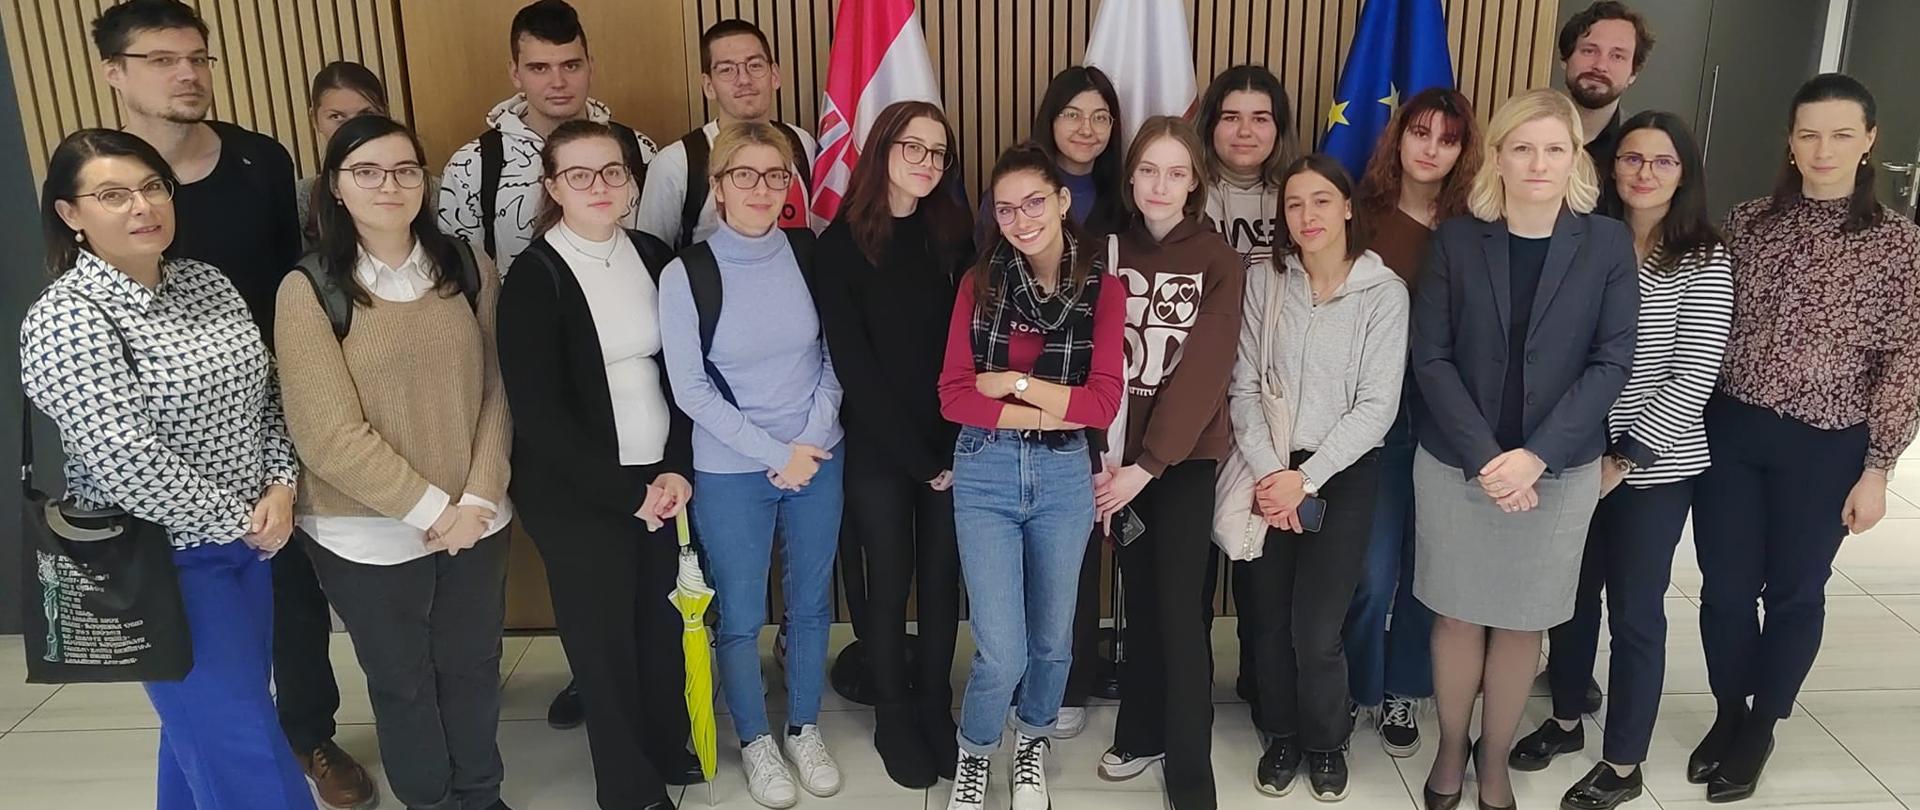 Spotkanie ze studentami pierwszego roku polonistyki Uniwersytetu w Zagrzebiu w ramach Tygodnia Służby Zagranicznej